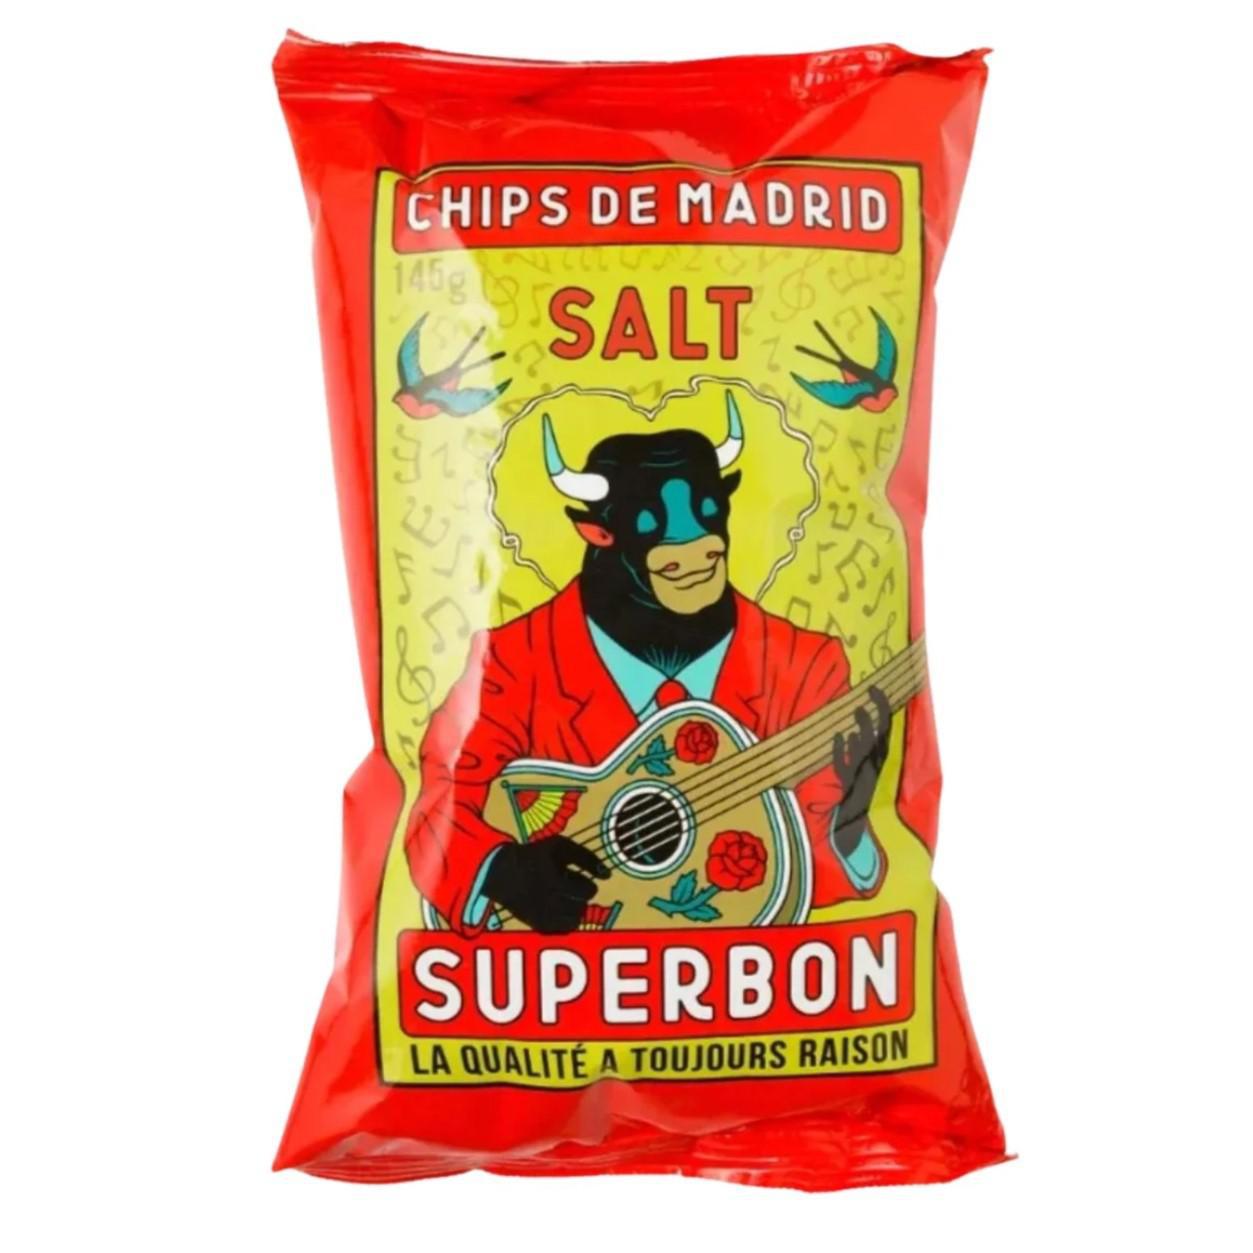 Superbon - 'Salt' Madrid Potato Crisps (135G) - The Epicurean Trader